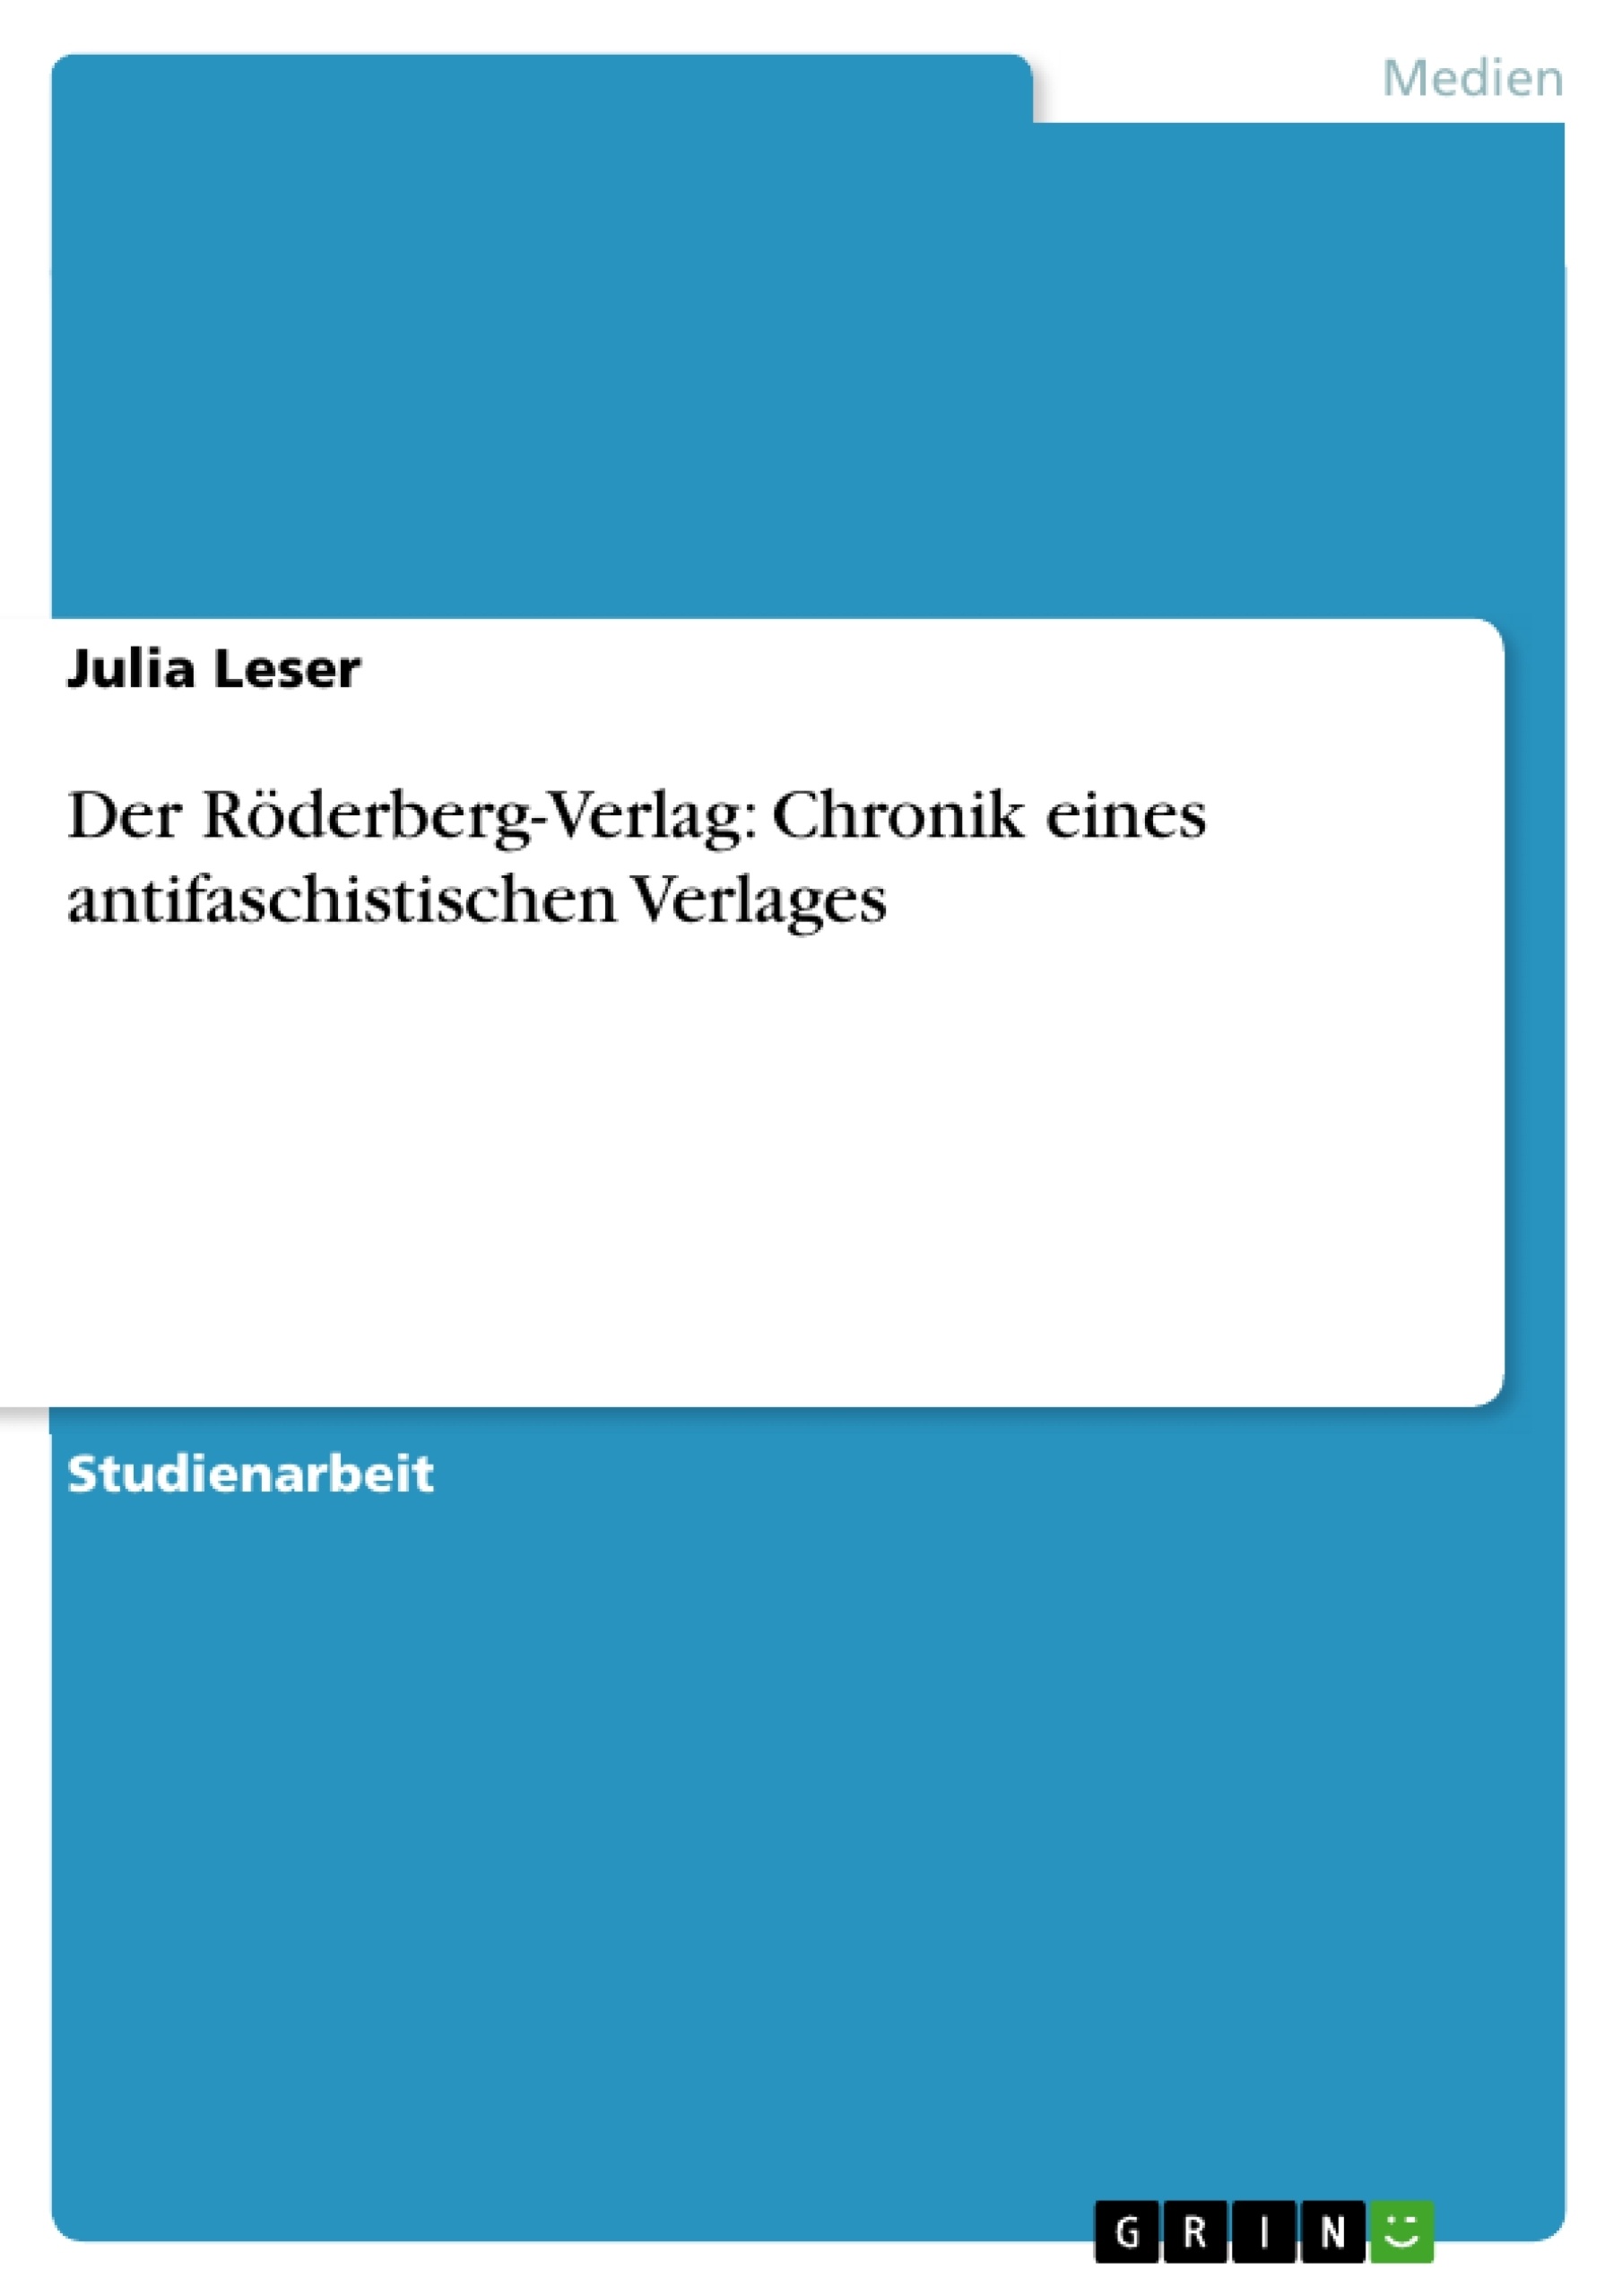 Title: Der Röderberg-Verlag: Chronik eines antifaschistischen Verlages